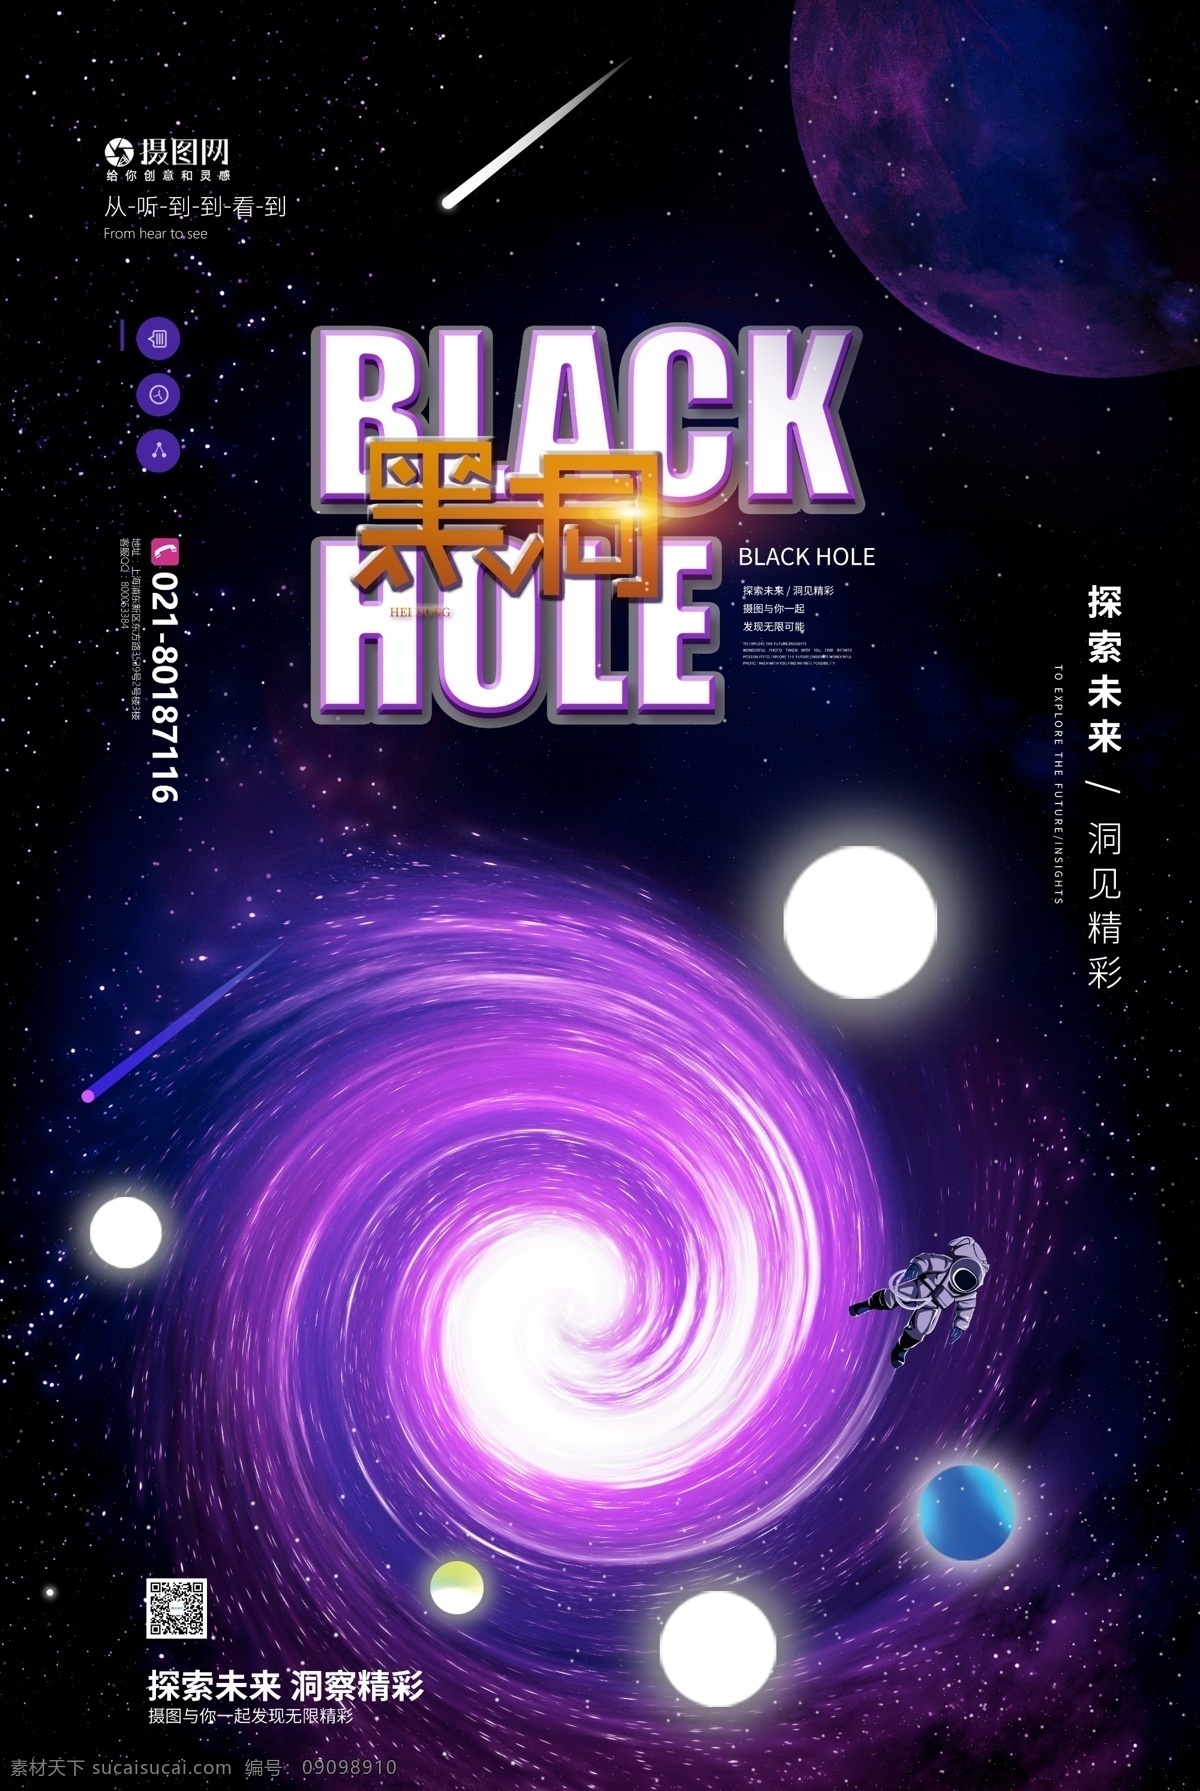 探索 黑洞 宣传海报 探索黑洞 黑洞照片 照片 科技 世界首张照片 宇宙 星空 探索宇宙 科技海报